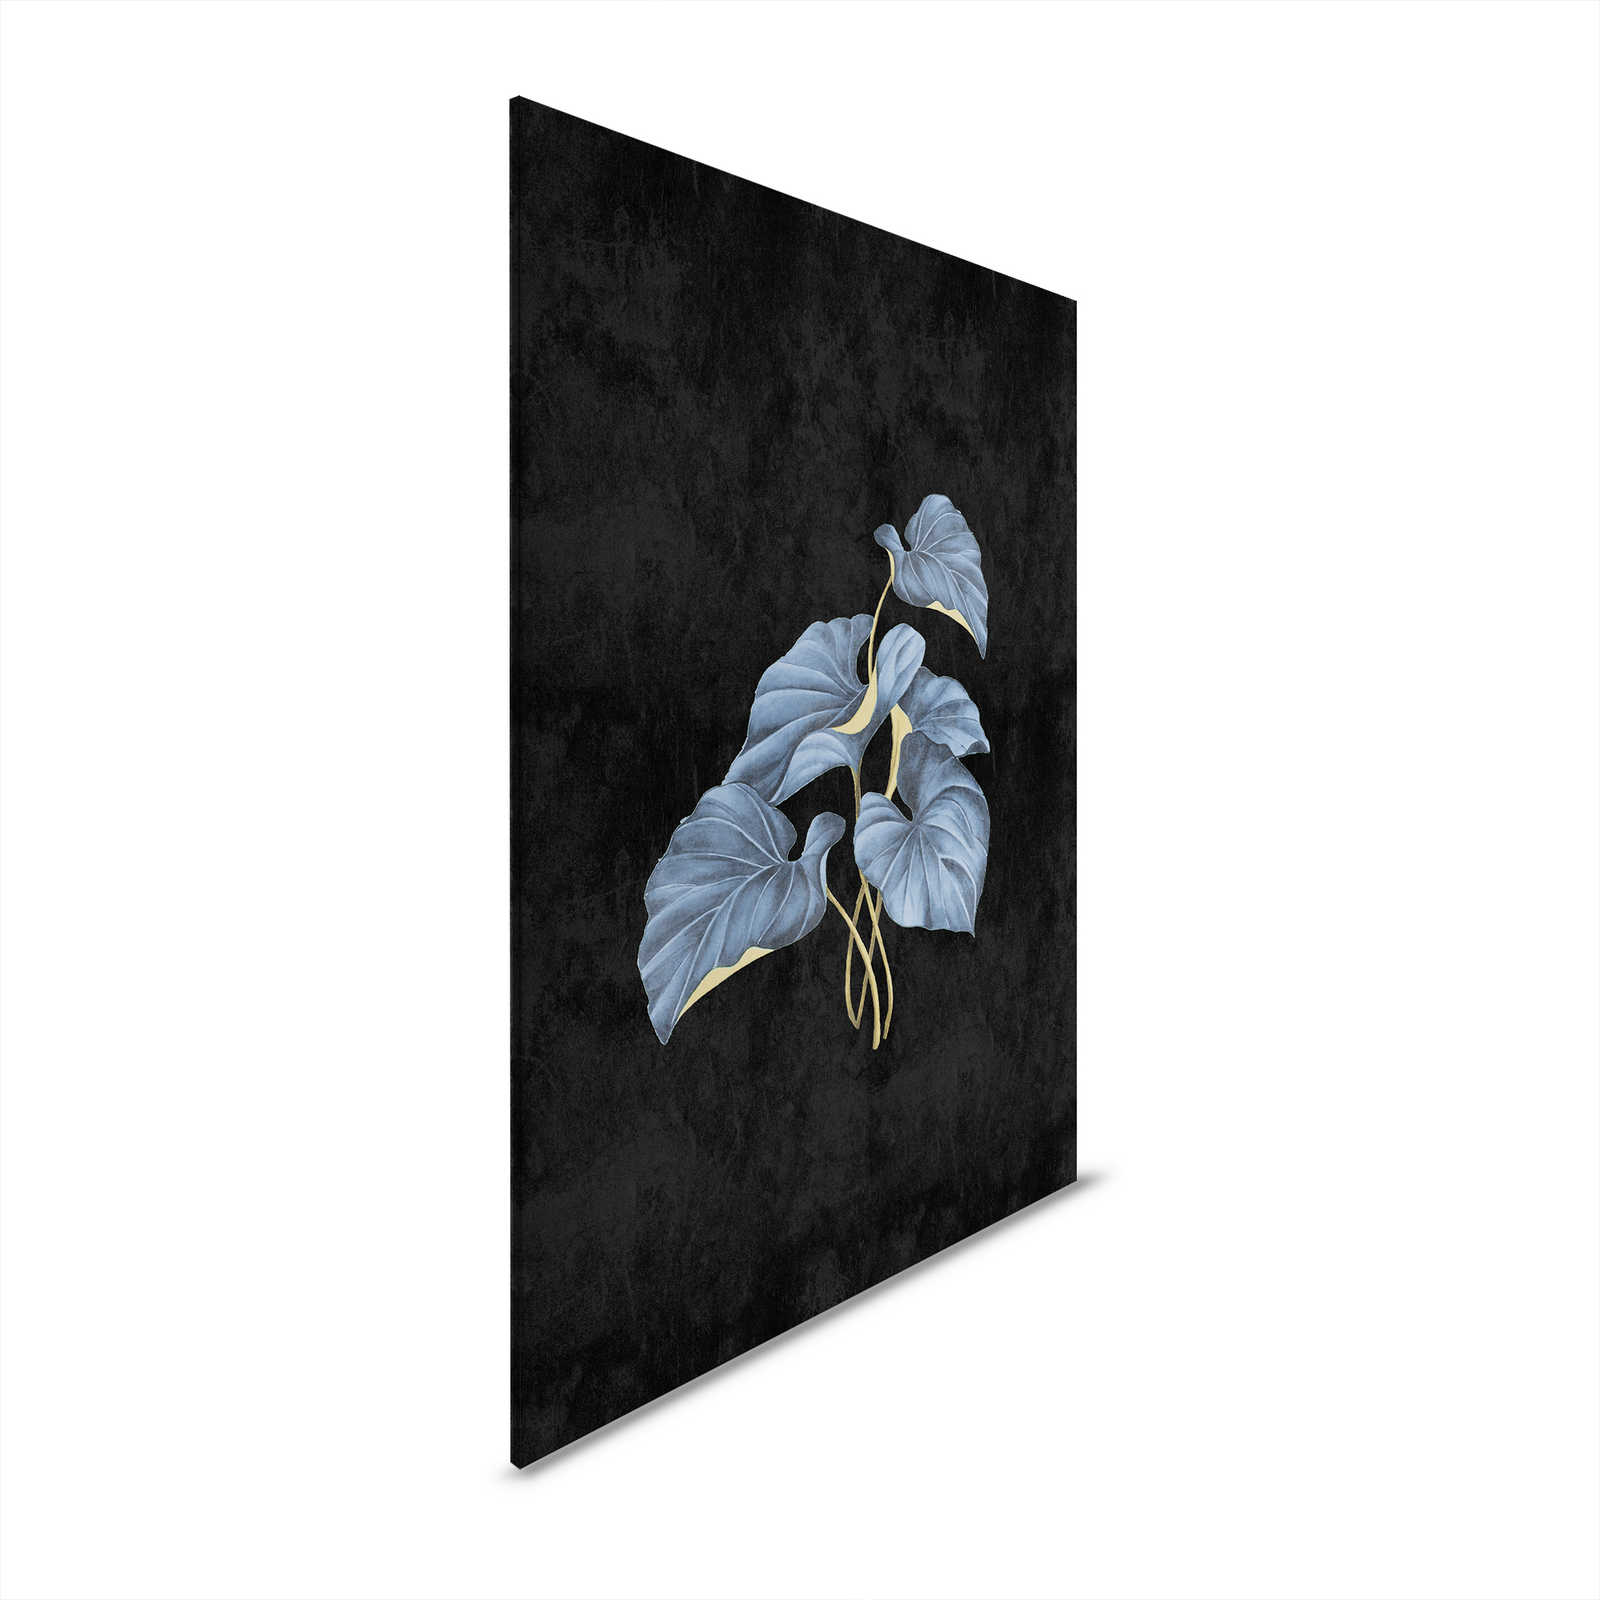 Fiji 1 - Schwarzes Leinwandbild Blaue Blätter mit Gold Akzent – 0,80 m x 1,20 m
